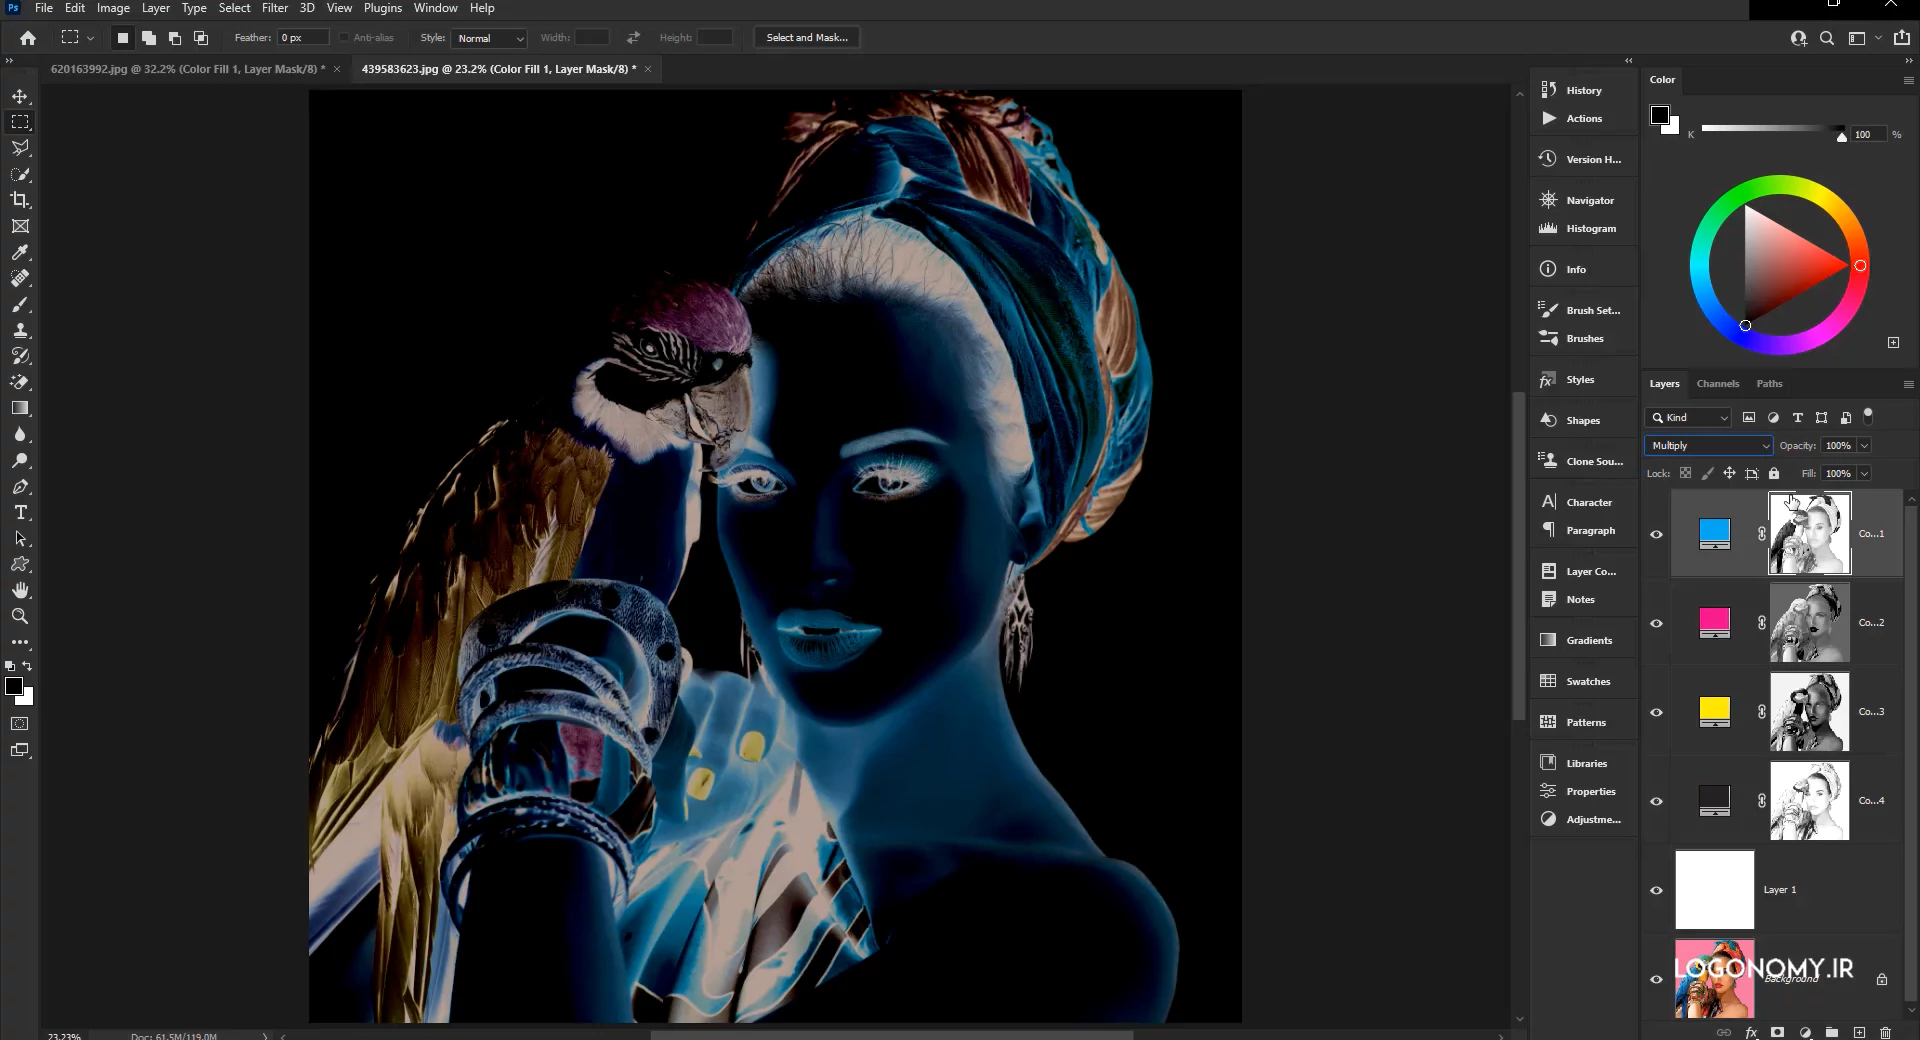 استفاده از Luminosity mask و تفکیک رنگ های تصویر در برنامه فتوشاپ